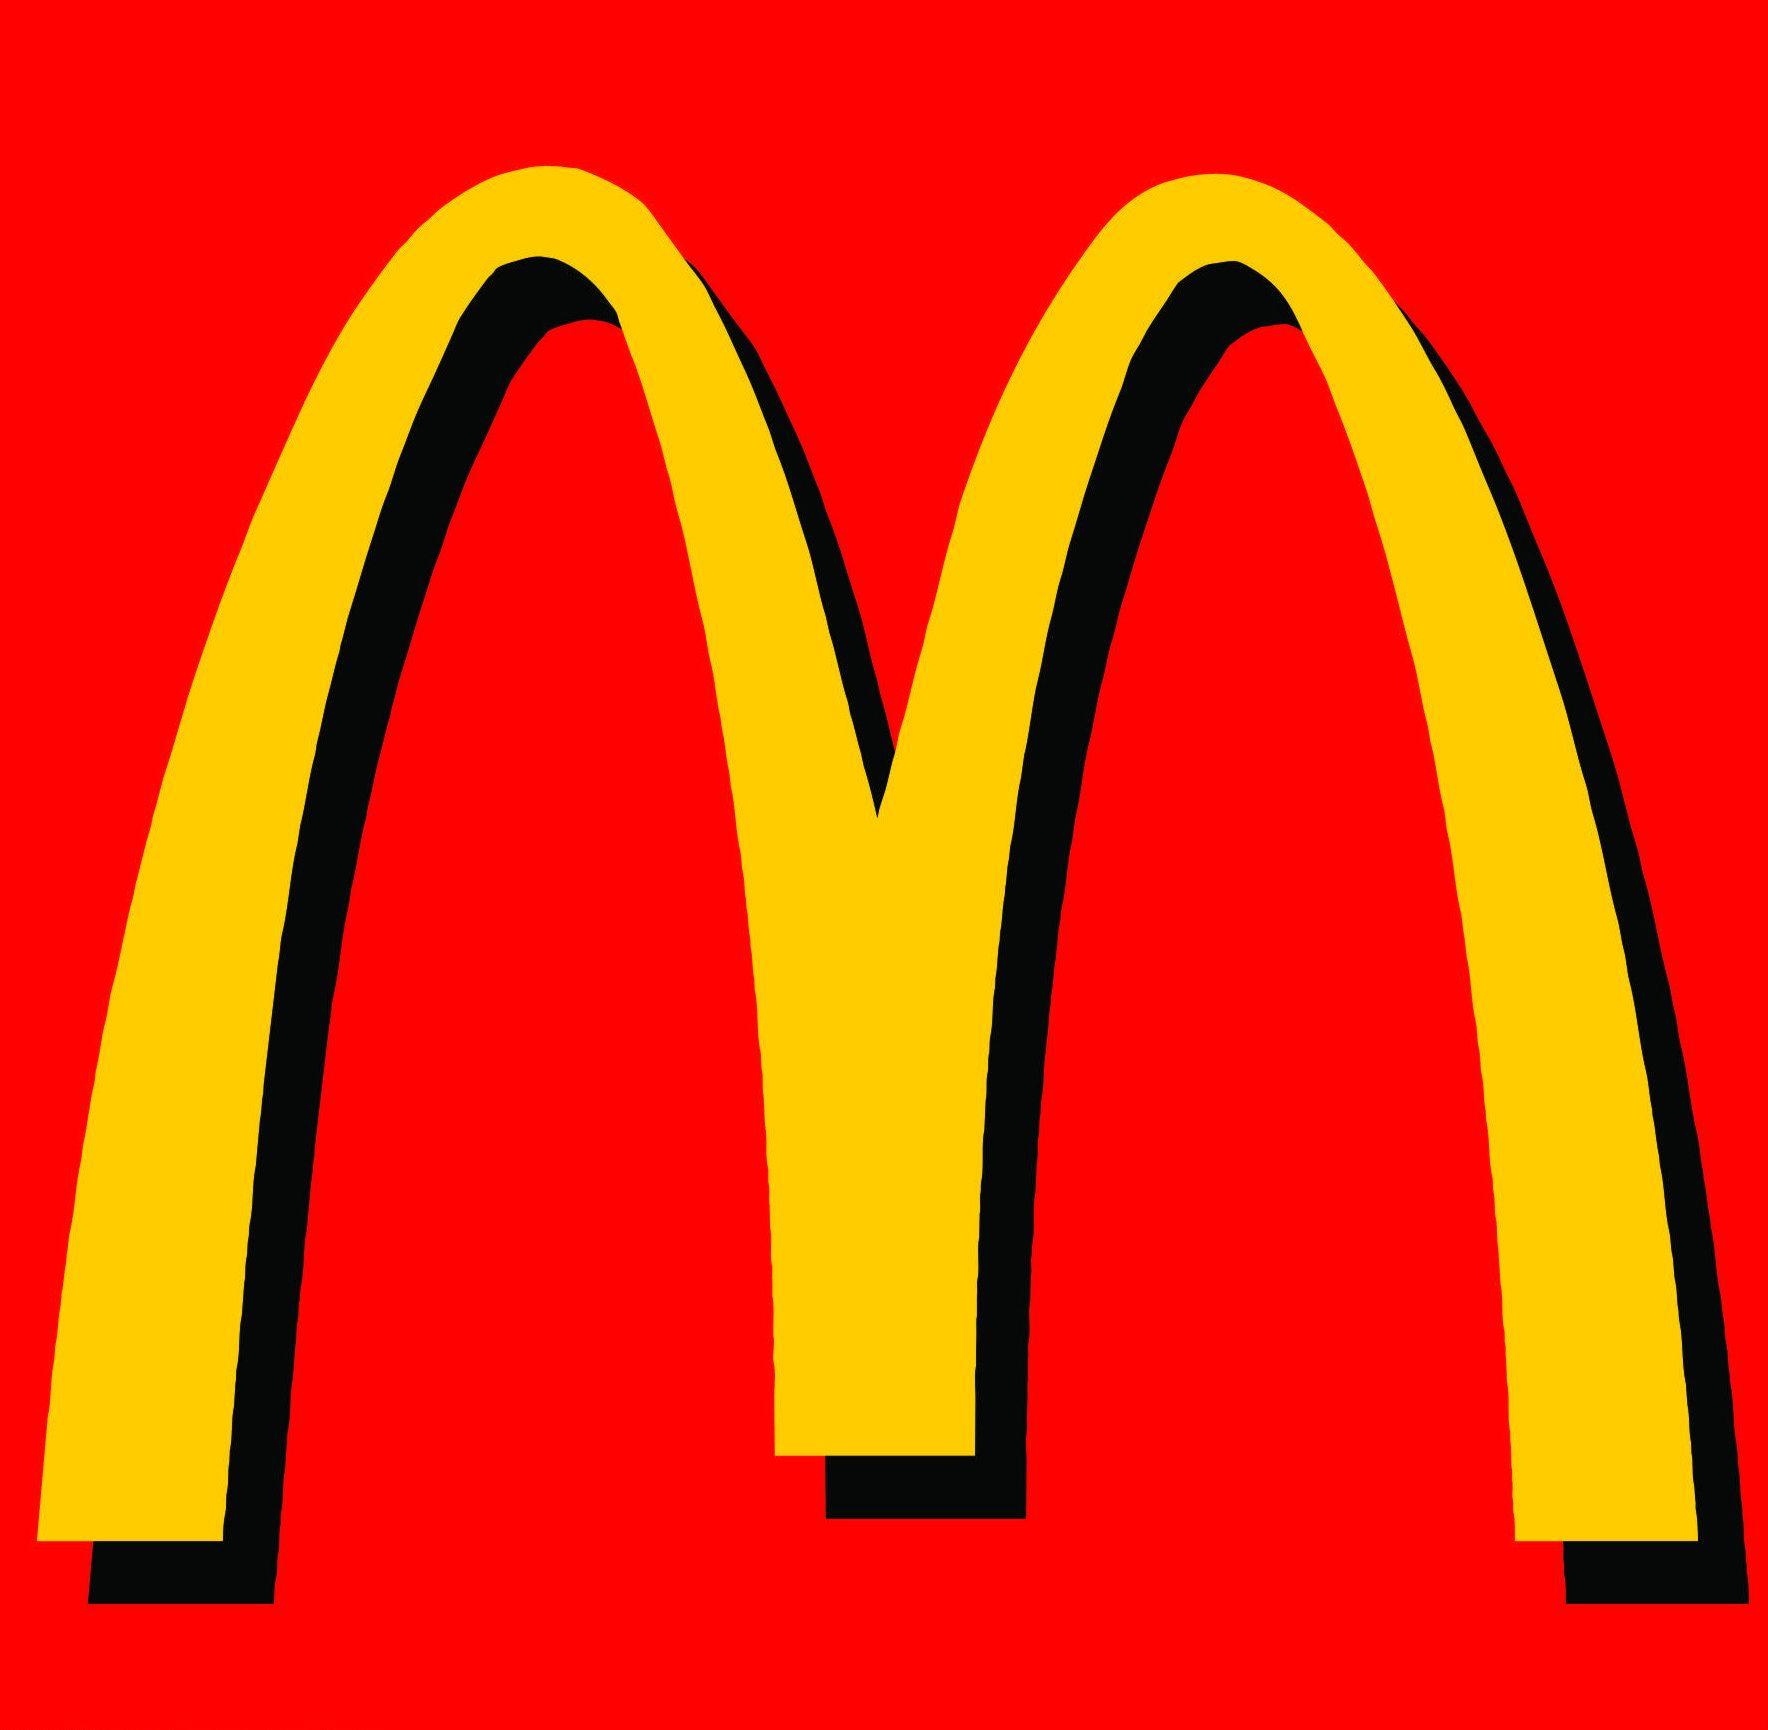 Red and Yellow D Logo - Mac d Logos